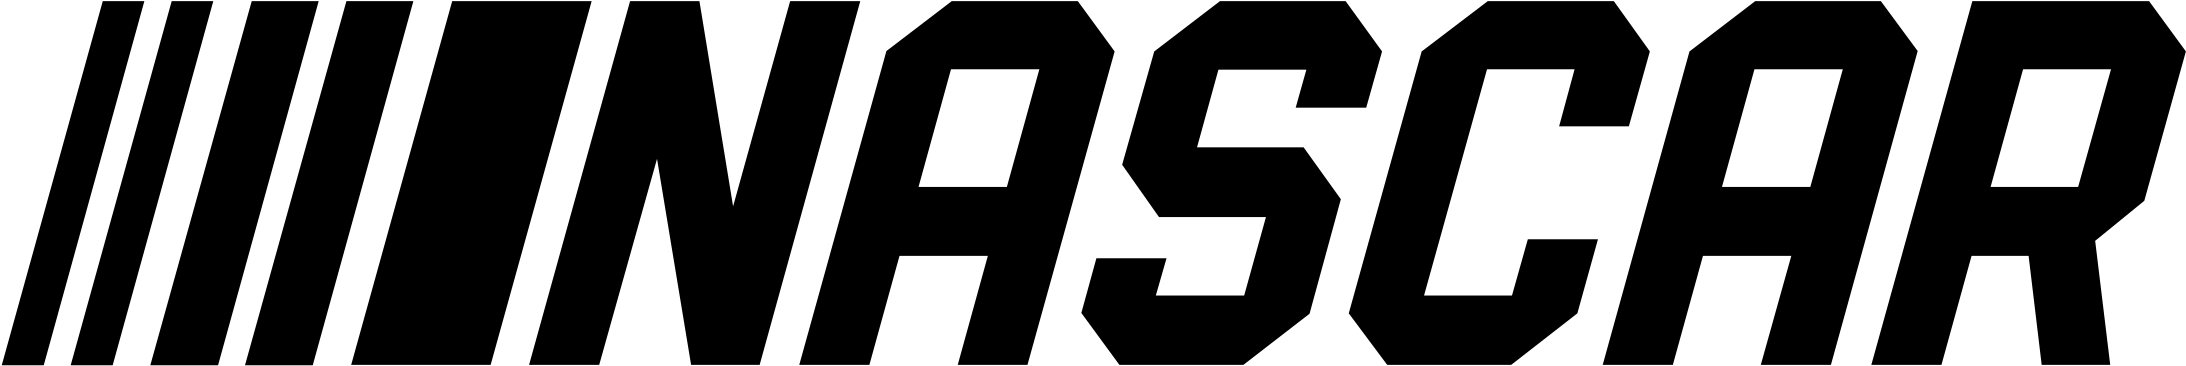 Logo Png Transparent Svg - Nascar Logo 2018 Png (2400x580), Png Download